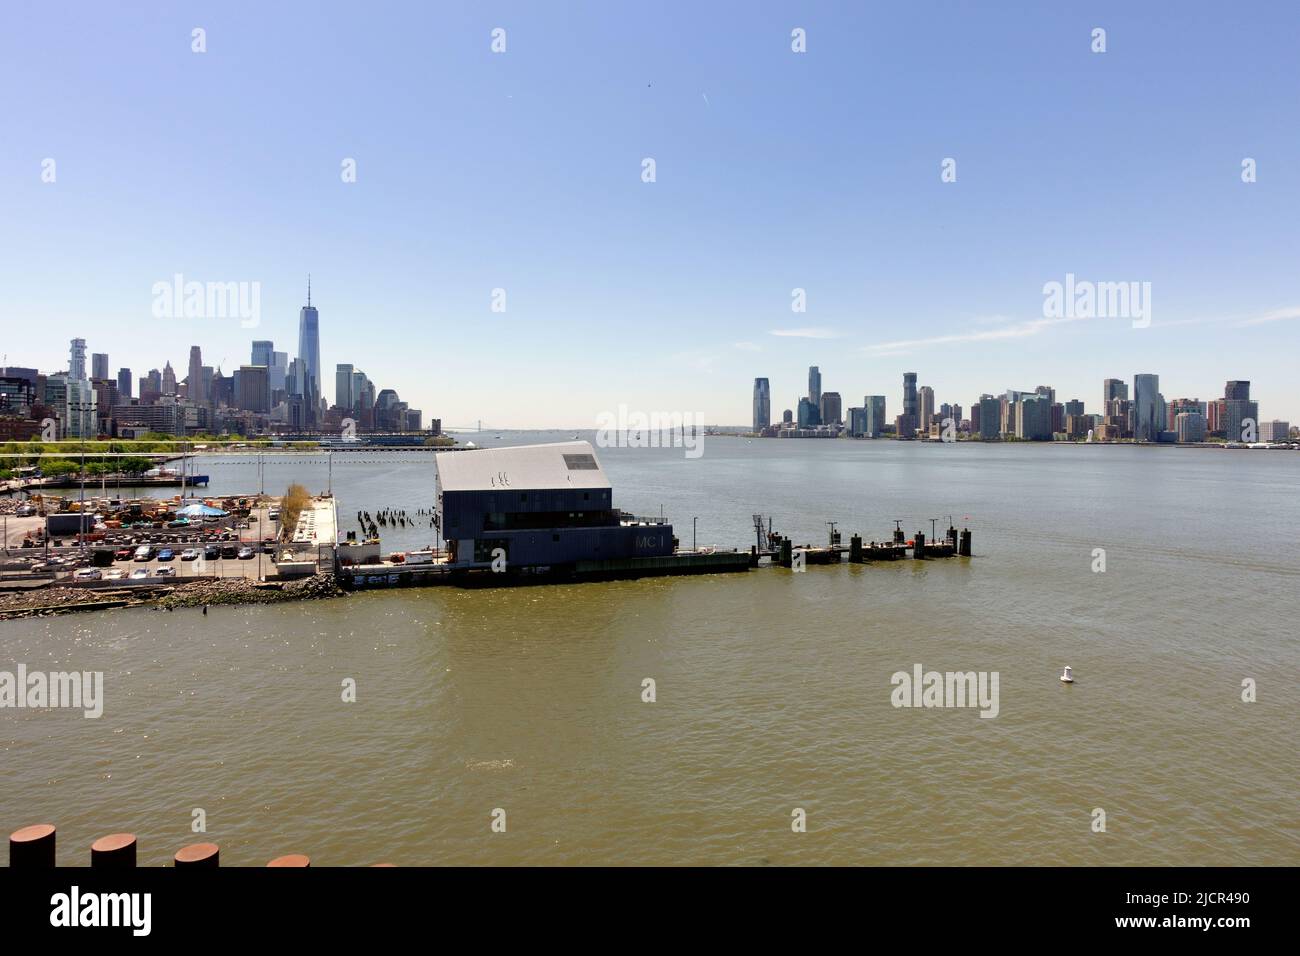 New York skyline across the Hudson River Stock Photo